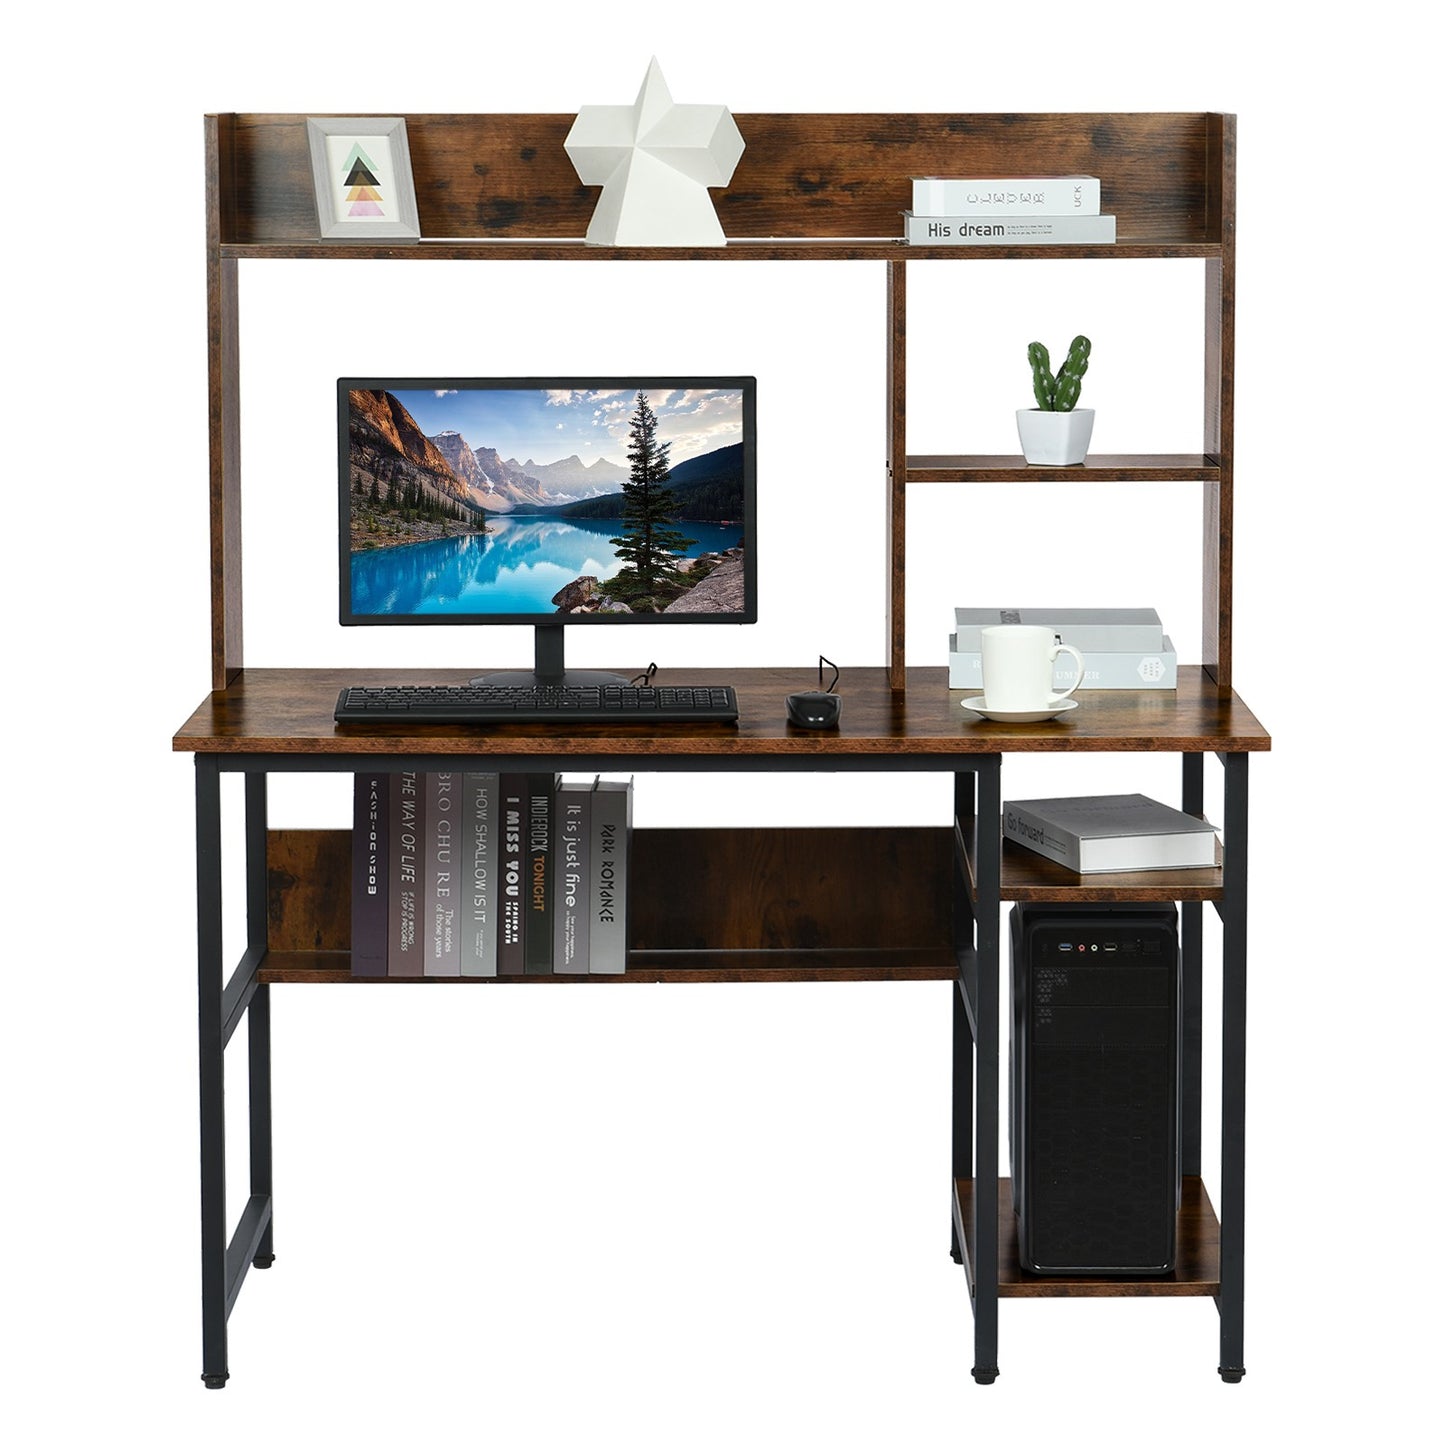 Storage Frame Home Office Computer Desk Study Writing Desk Workstation